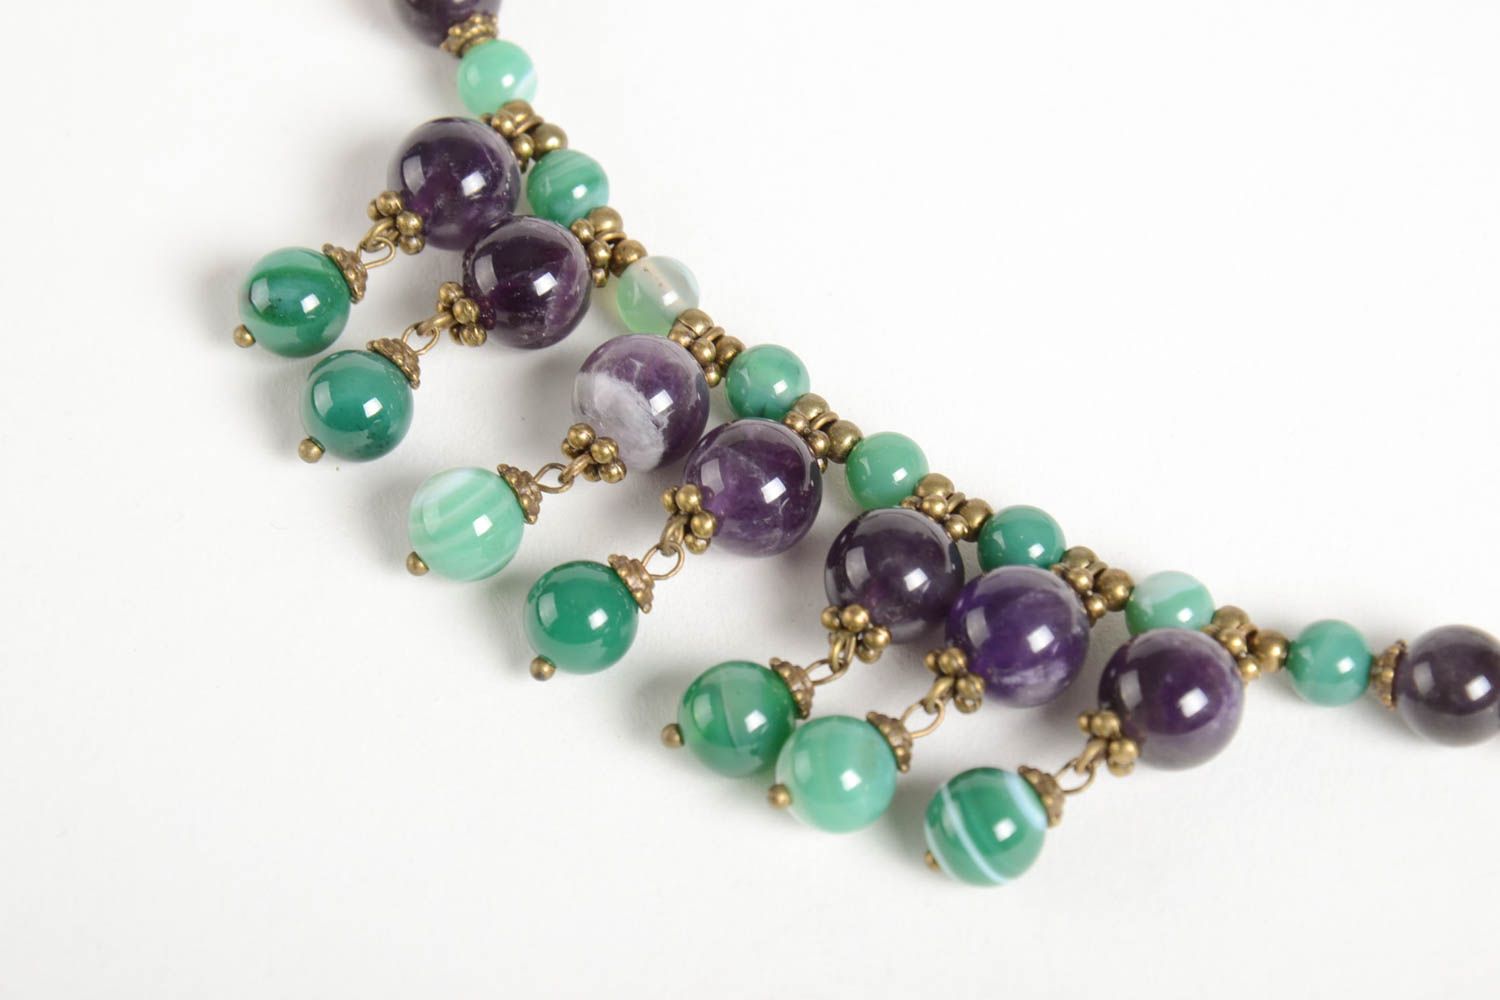 Handmade beaded elegant necklace stylish unusual jewelry natural stone necklace photo 3